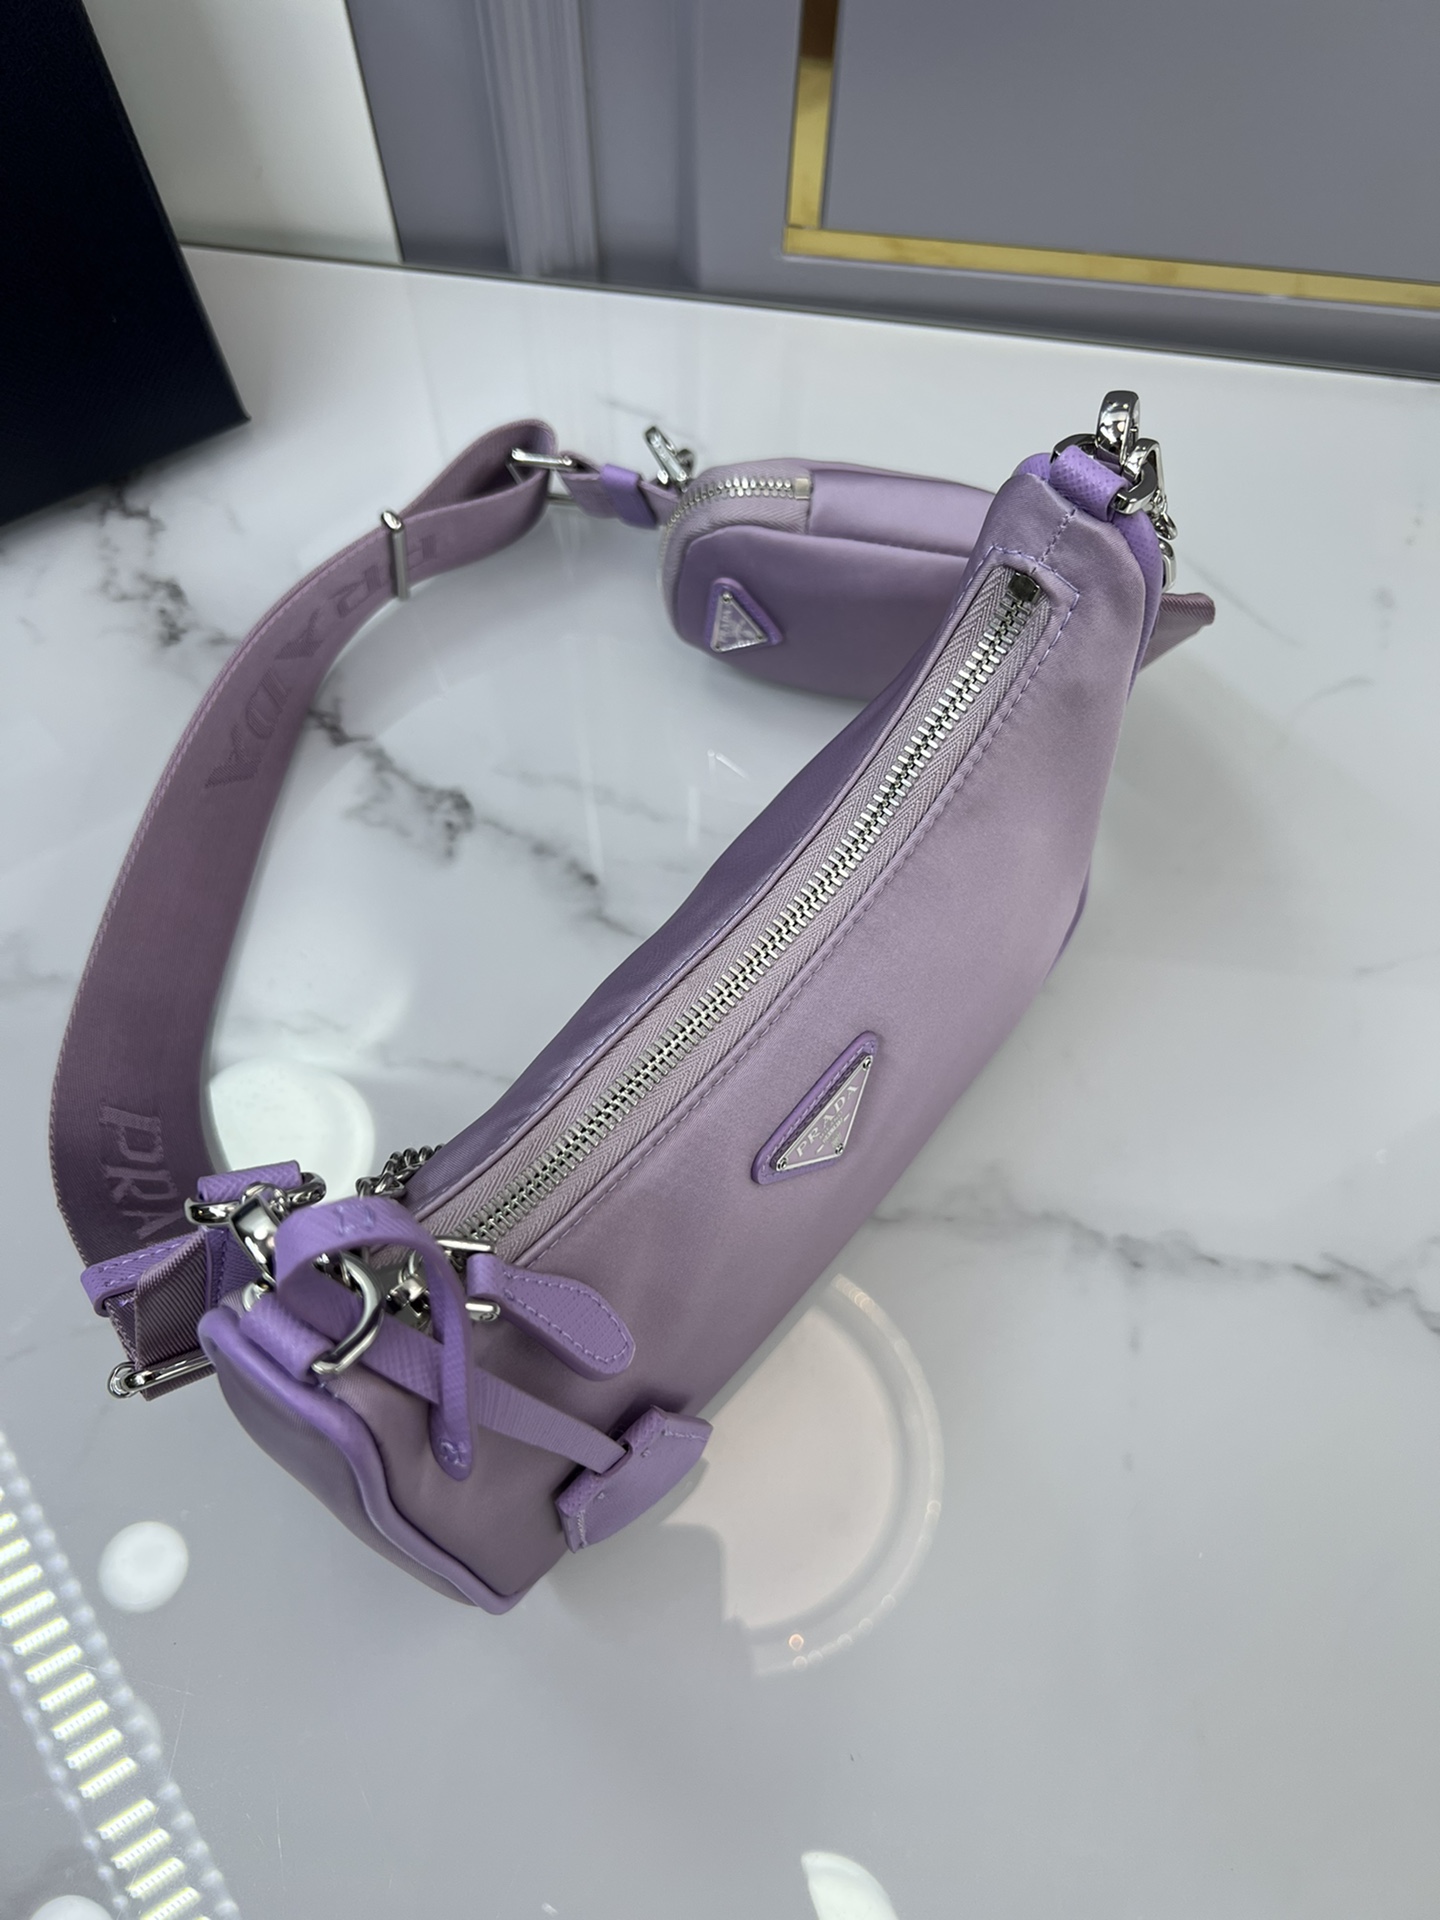 正品级原厂皮版本爆款推荐hobo三合一紫色Hobo三合一已成为主流时尚趋势啦！超级百搭好看时髦潮人一定要